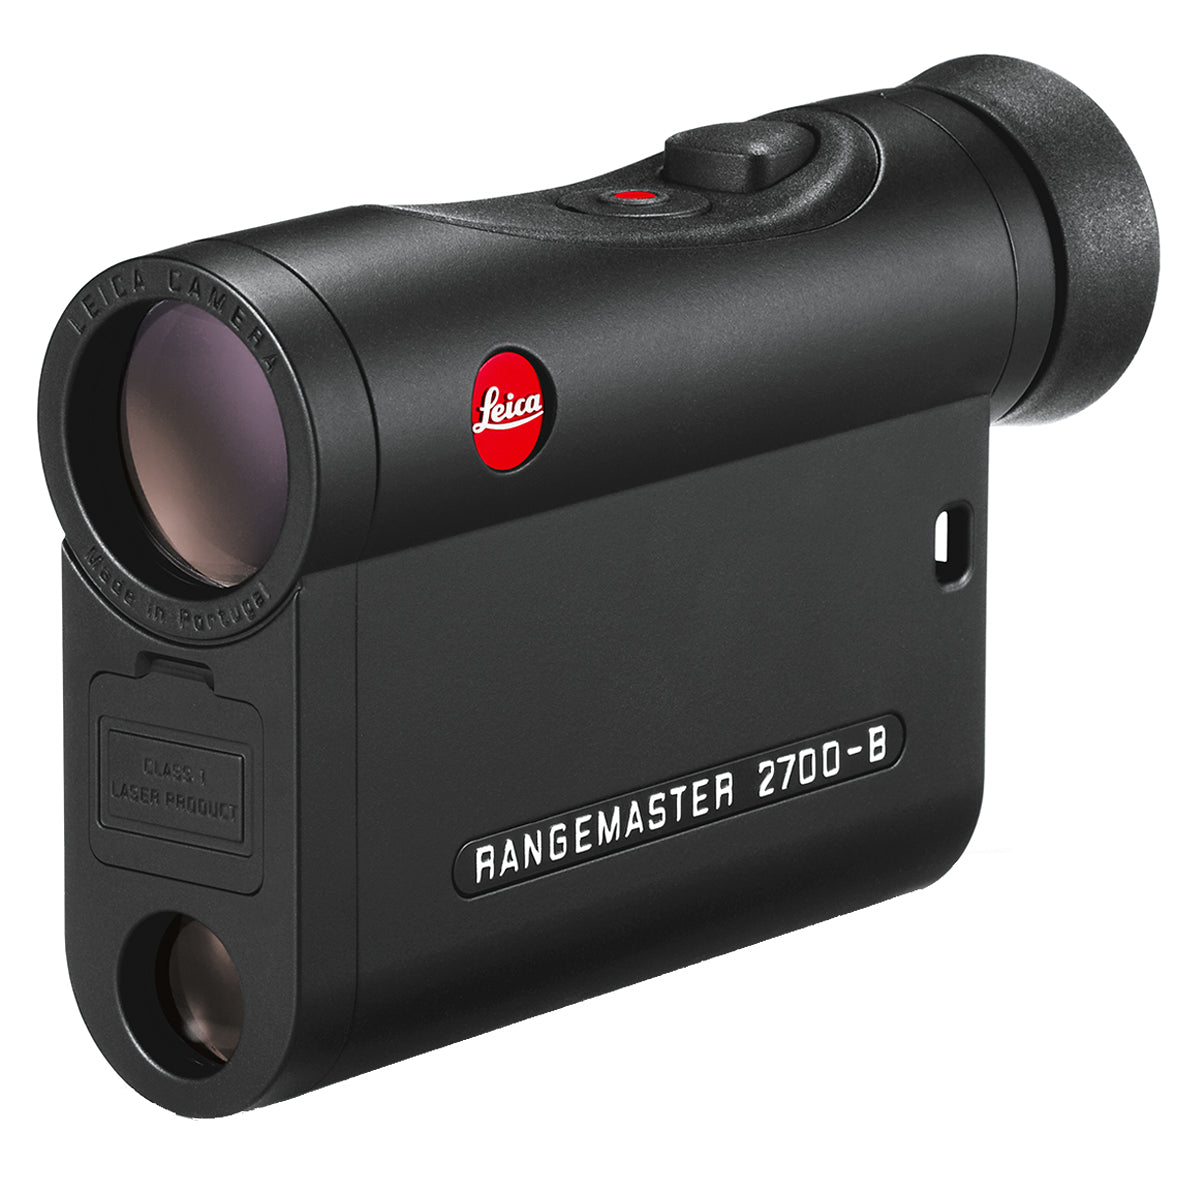 Leica Rangemaster CRF 2700-B Laser Rangefinder in Leica Rangemaster CRF 2700-B Laser Rangefinder by Leica | Optics - goHUNT Shop by GOHUNT | Leica - GOHUNT Shop